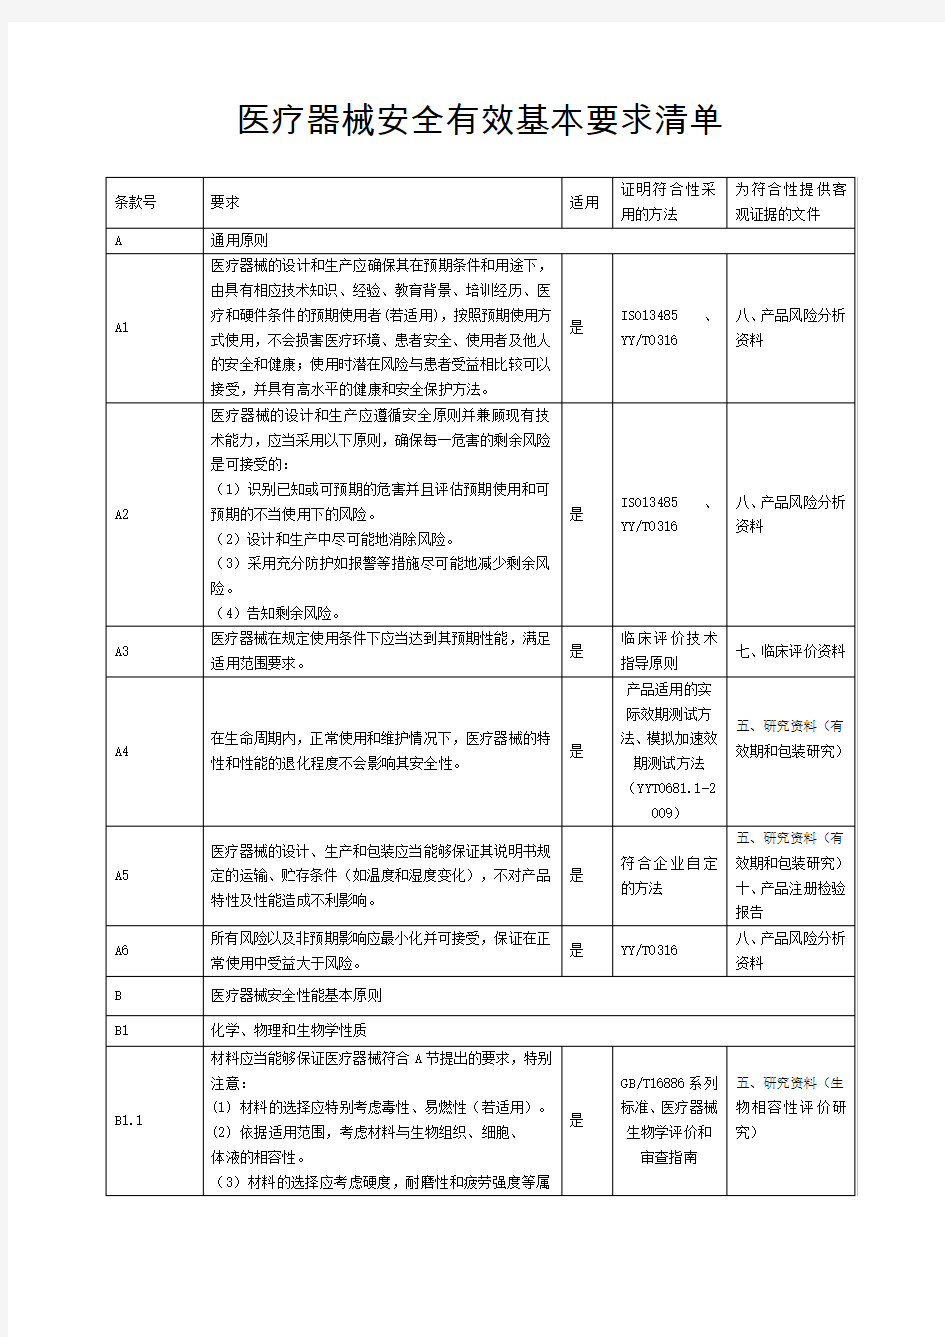 (完整版)医疗器械安全有效基本要求清单-中文模板